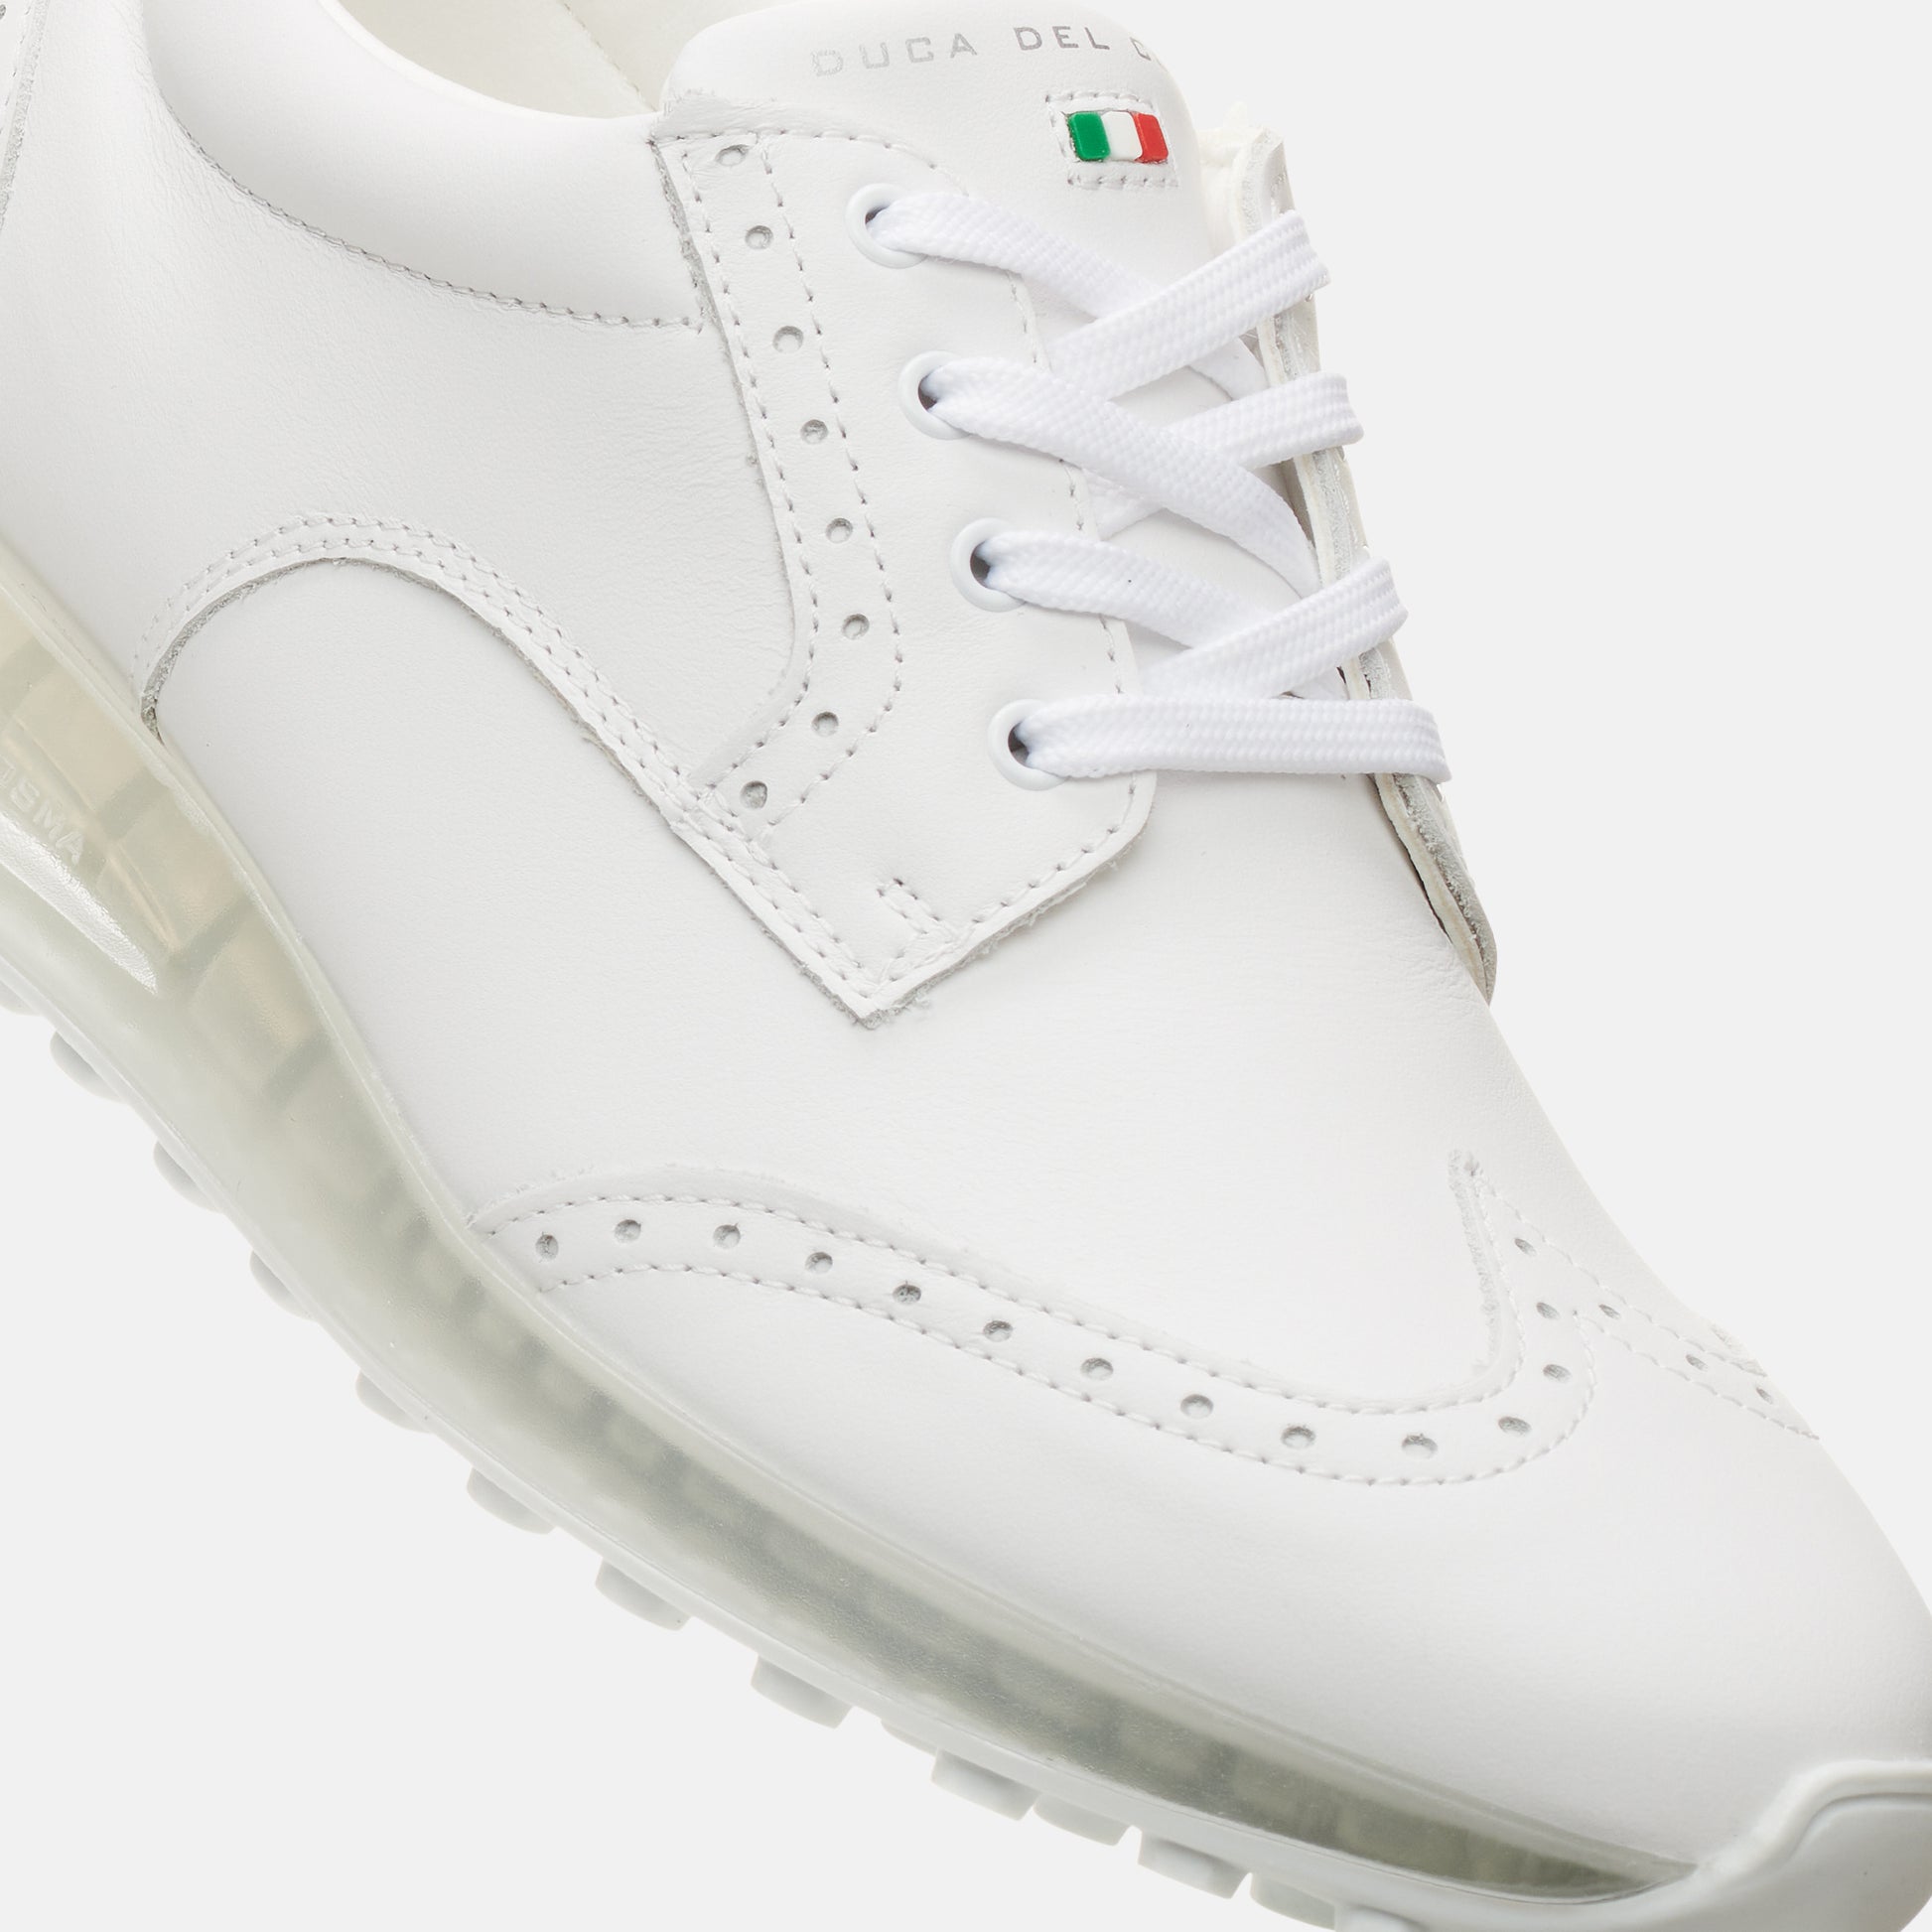 Bellezza White women's golf shoe - best selling waterproof golf shoe duca del cosma